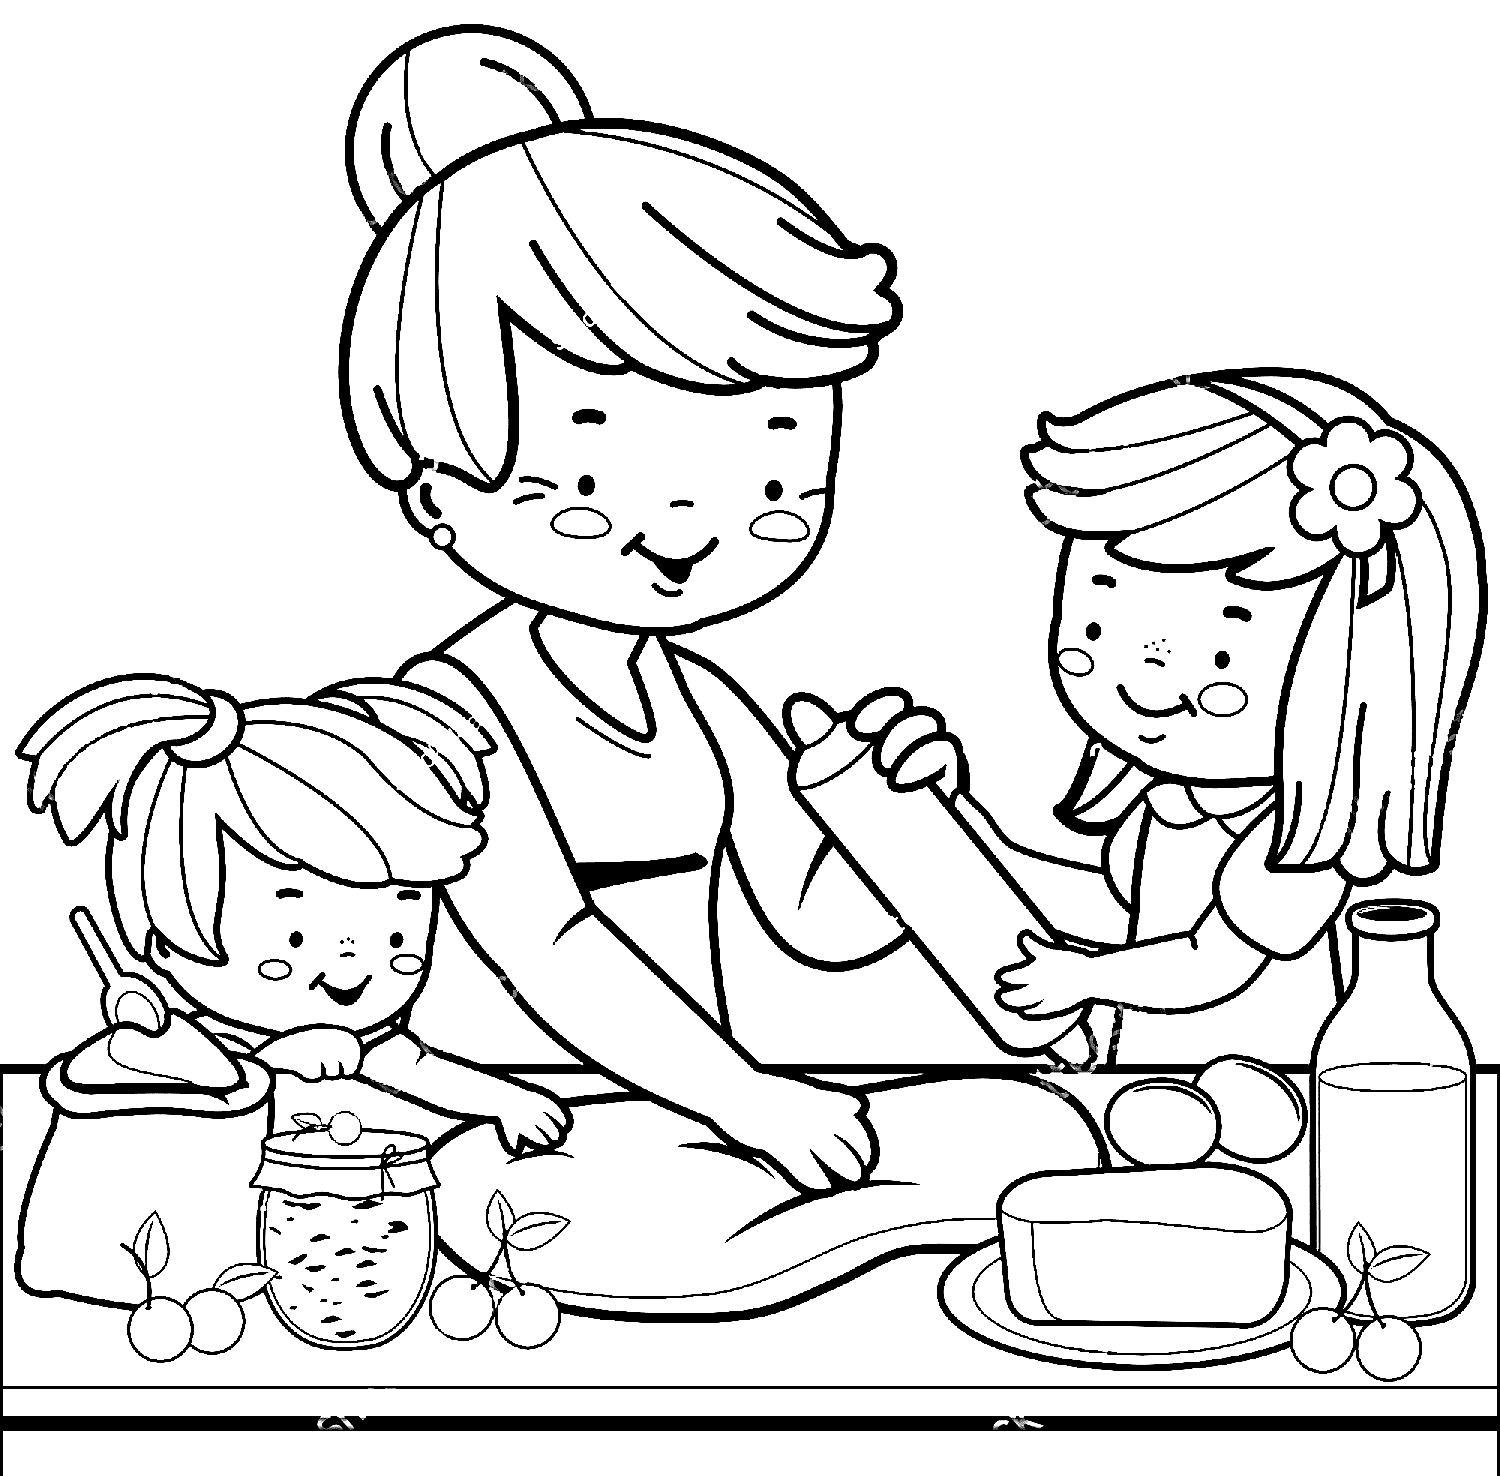 Großmutter und Kinder backen Kuchen aus der Familie